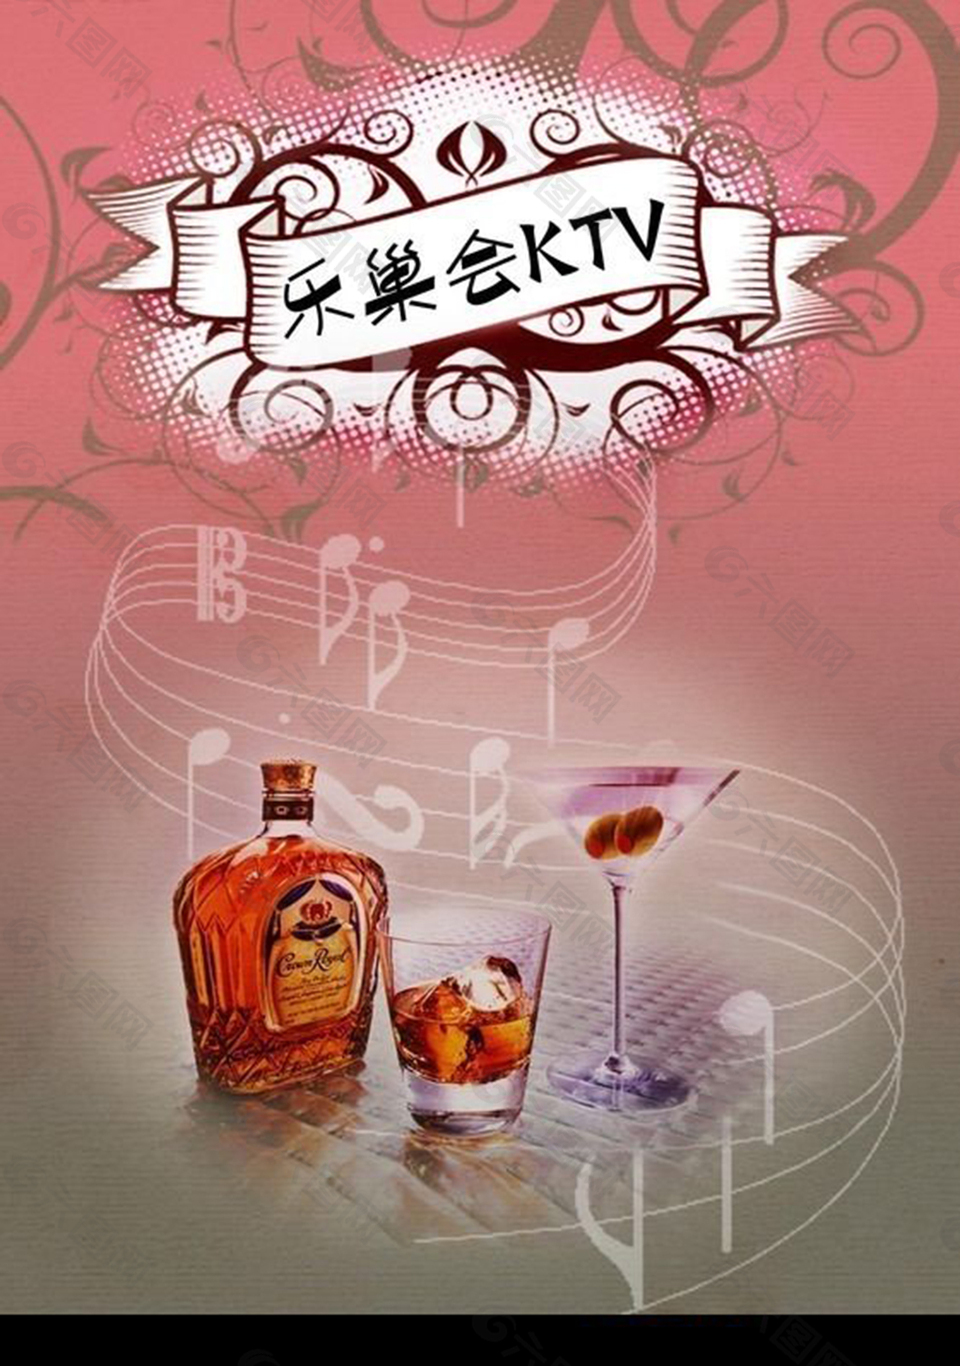 乐巢会KTV宣传海报